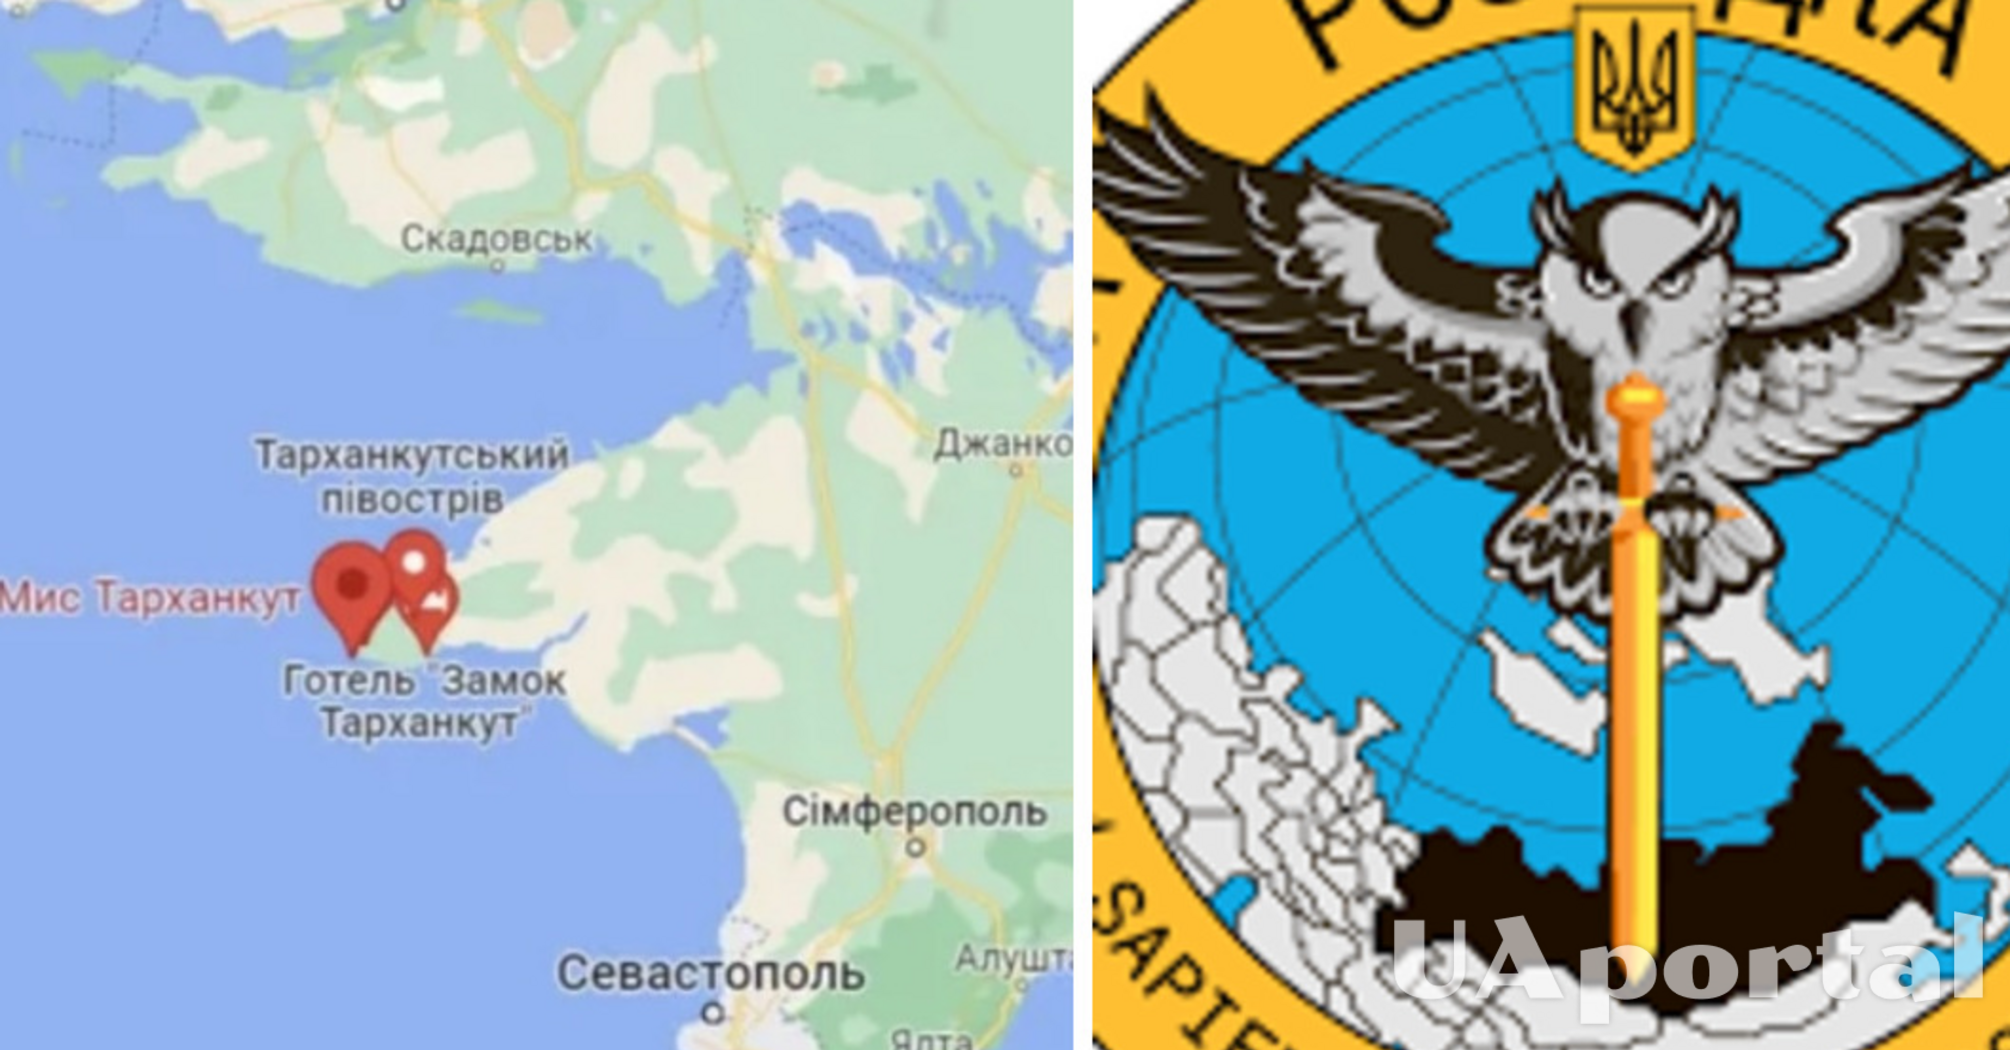 Бойцы ГУР и ВМС установили украинский флаг в Крыму: появилось видео ночного рейда